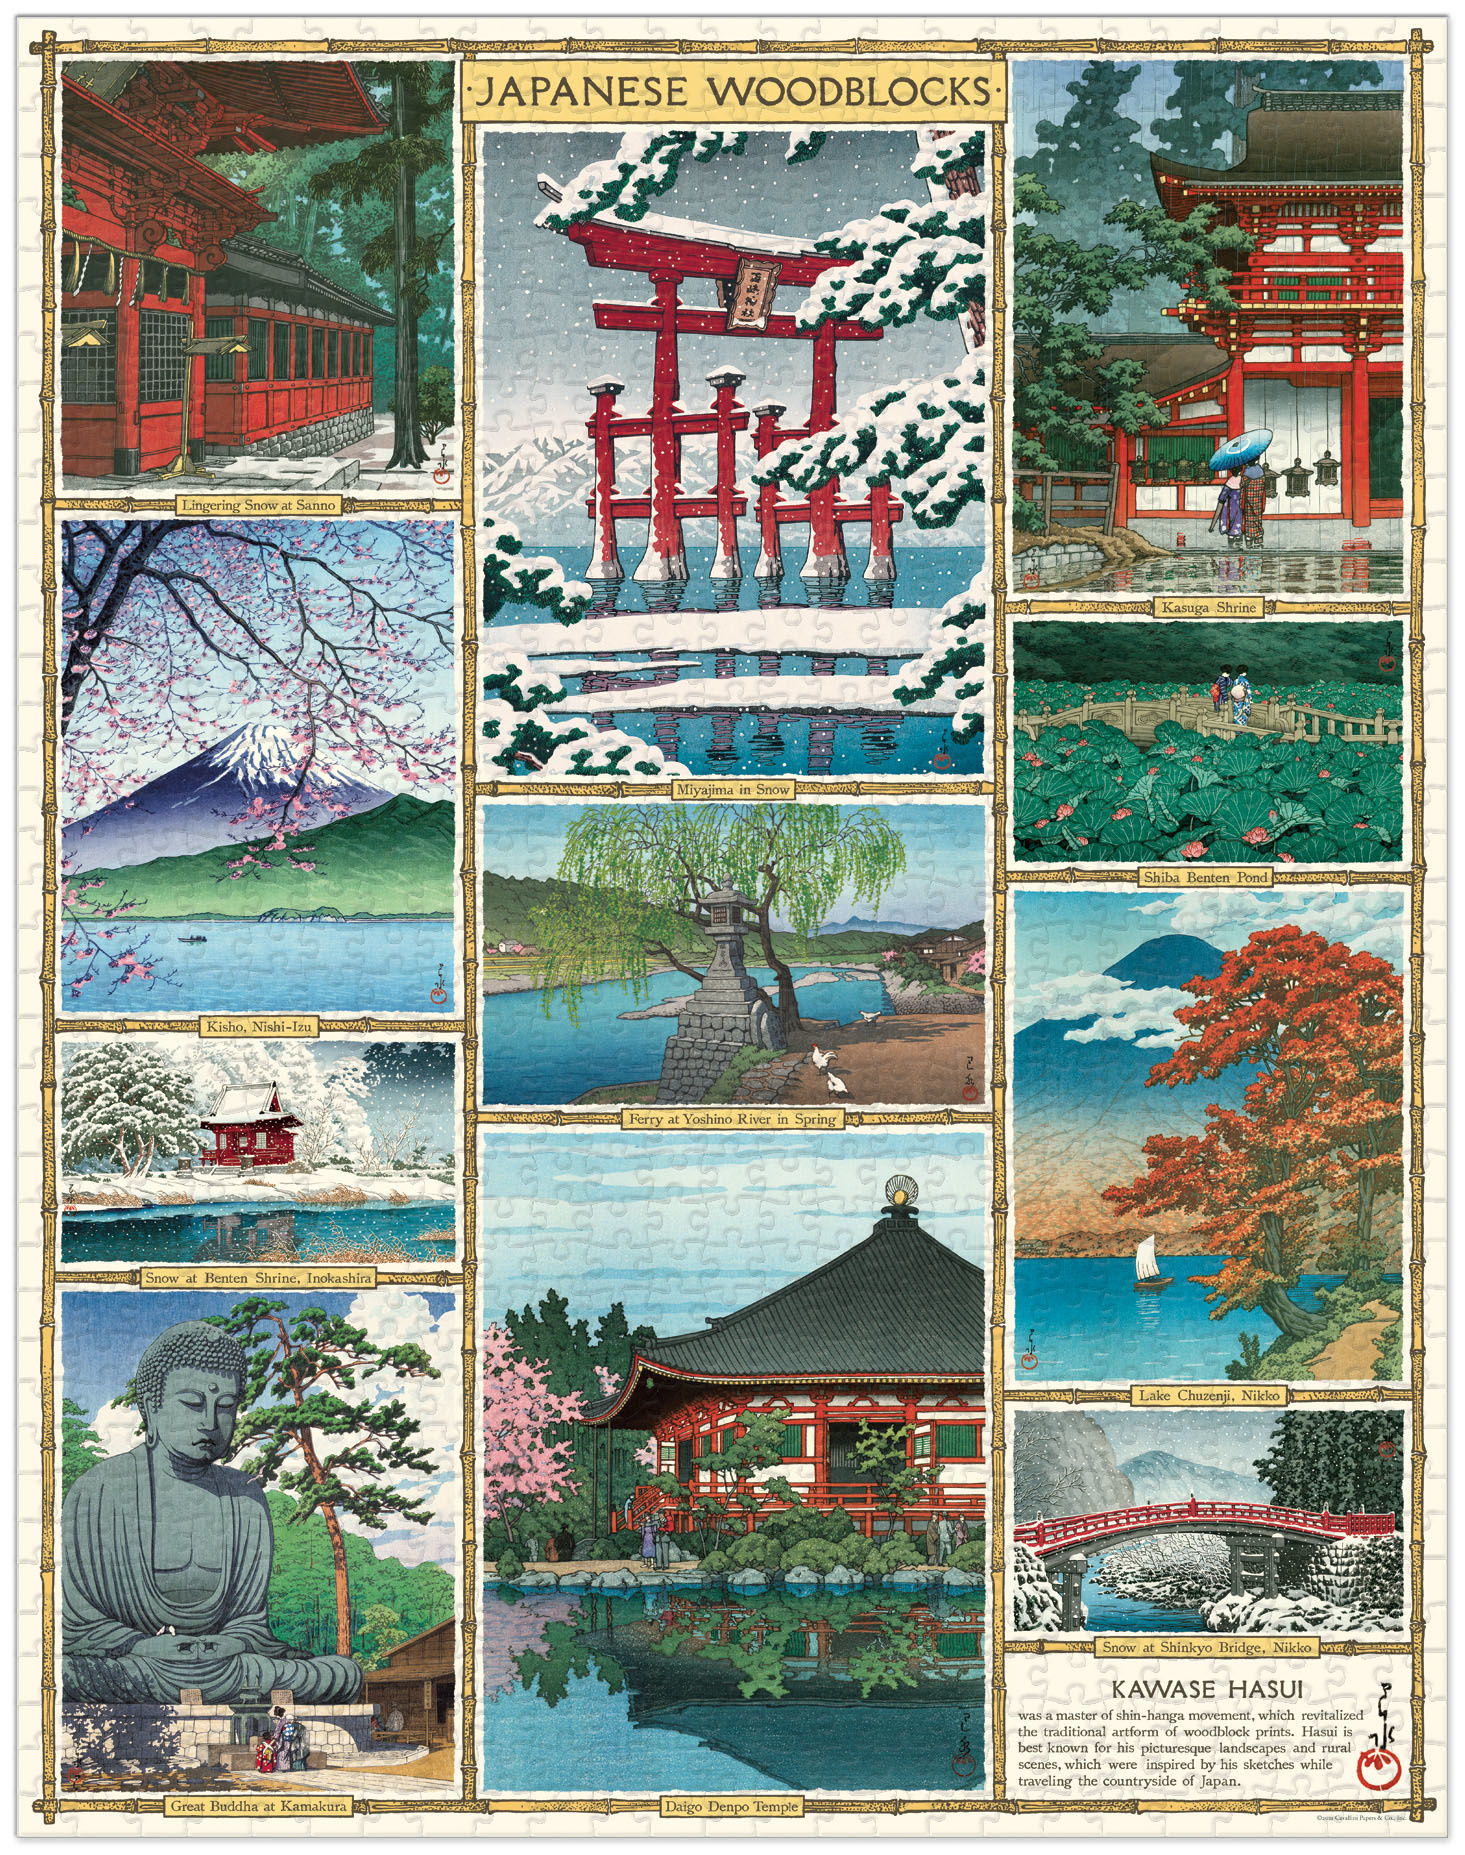 Puzzle Classique 500 pièces Tokyo Collage Japon Voyage Culture